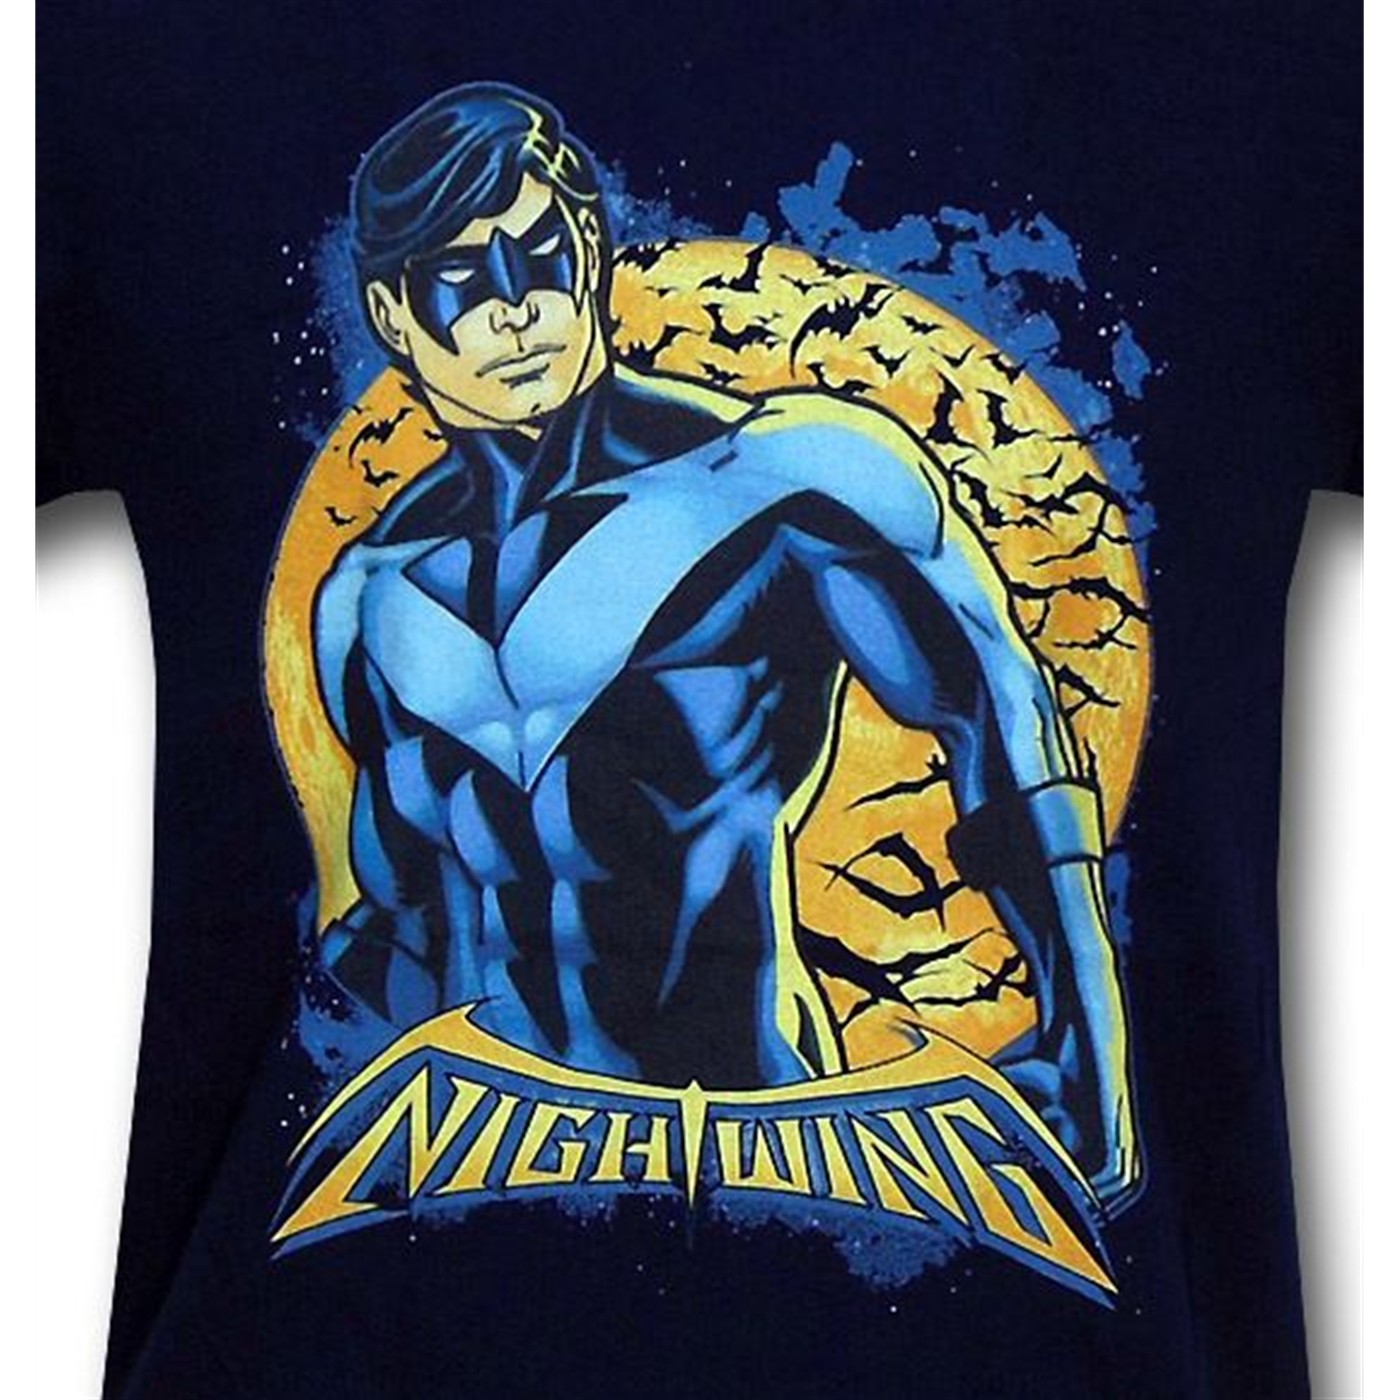 Nightwing Orange Moon Kids Navy T-Shirt